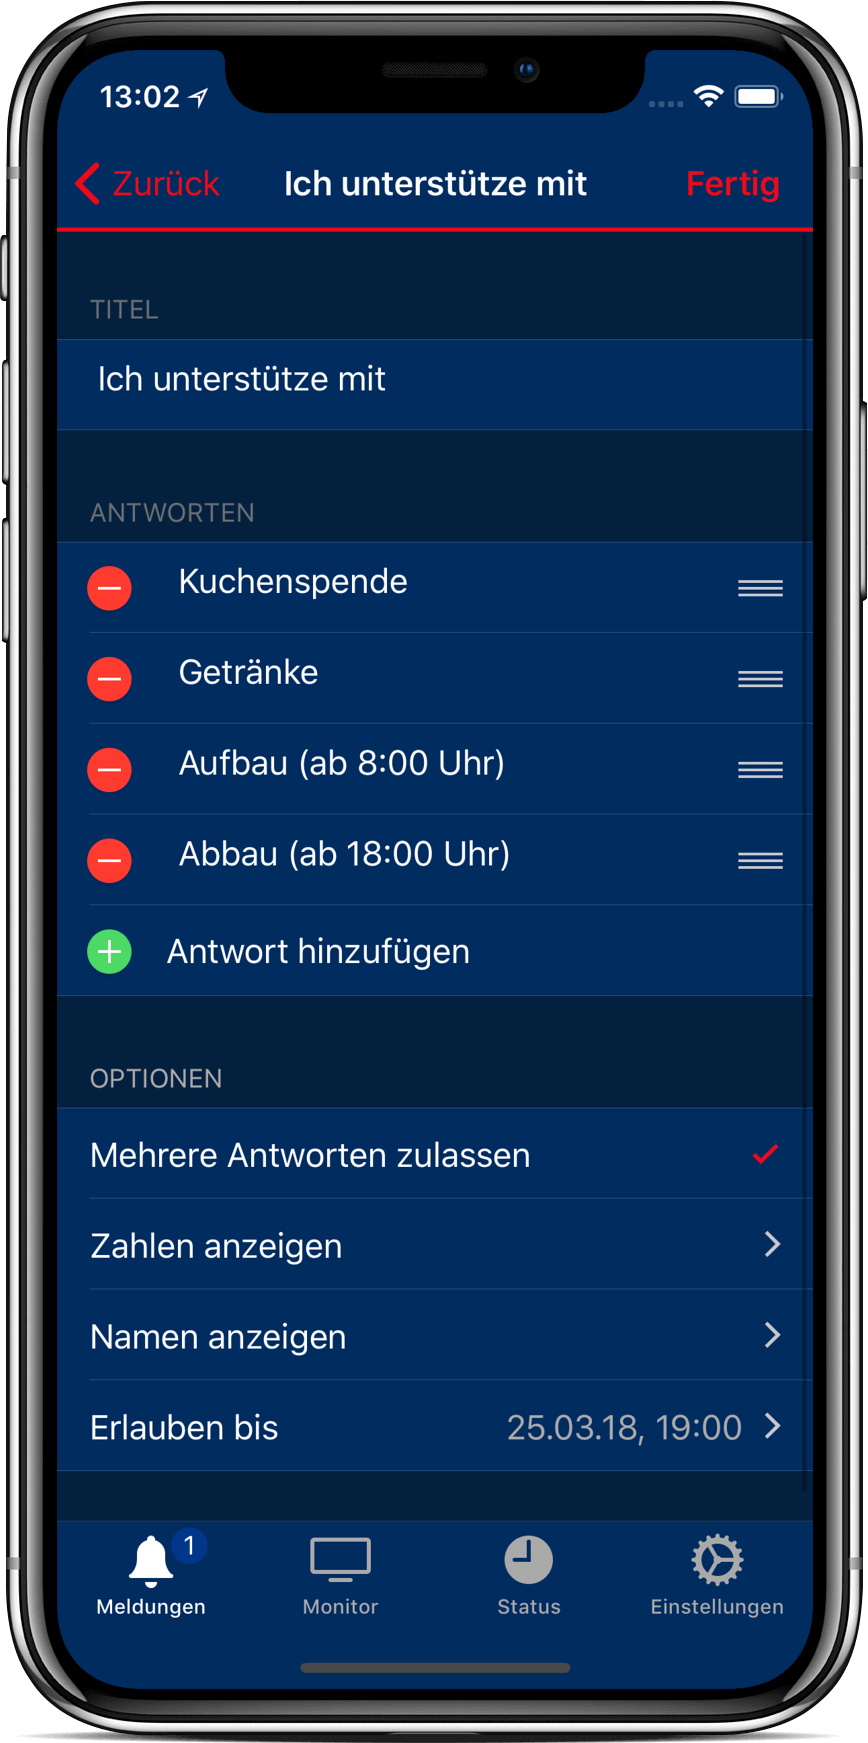 Kommunikation und Dienstplanung bei BOS über die kostenlose App DIVERA 24/7